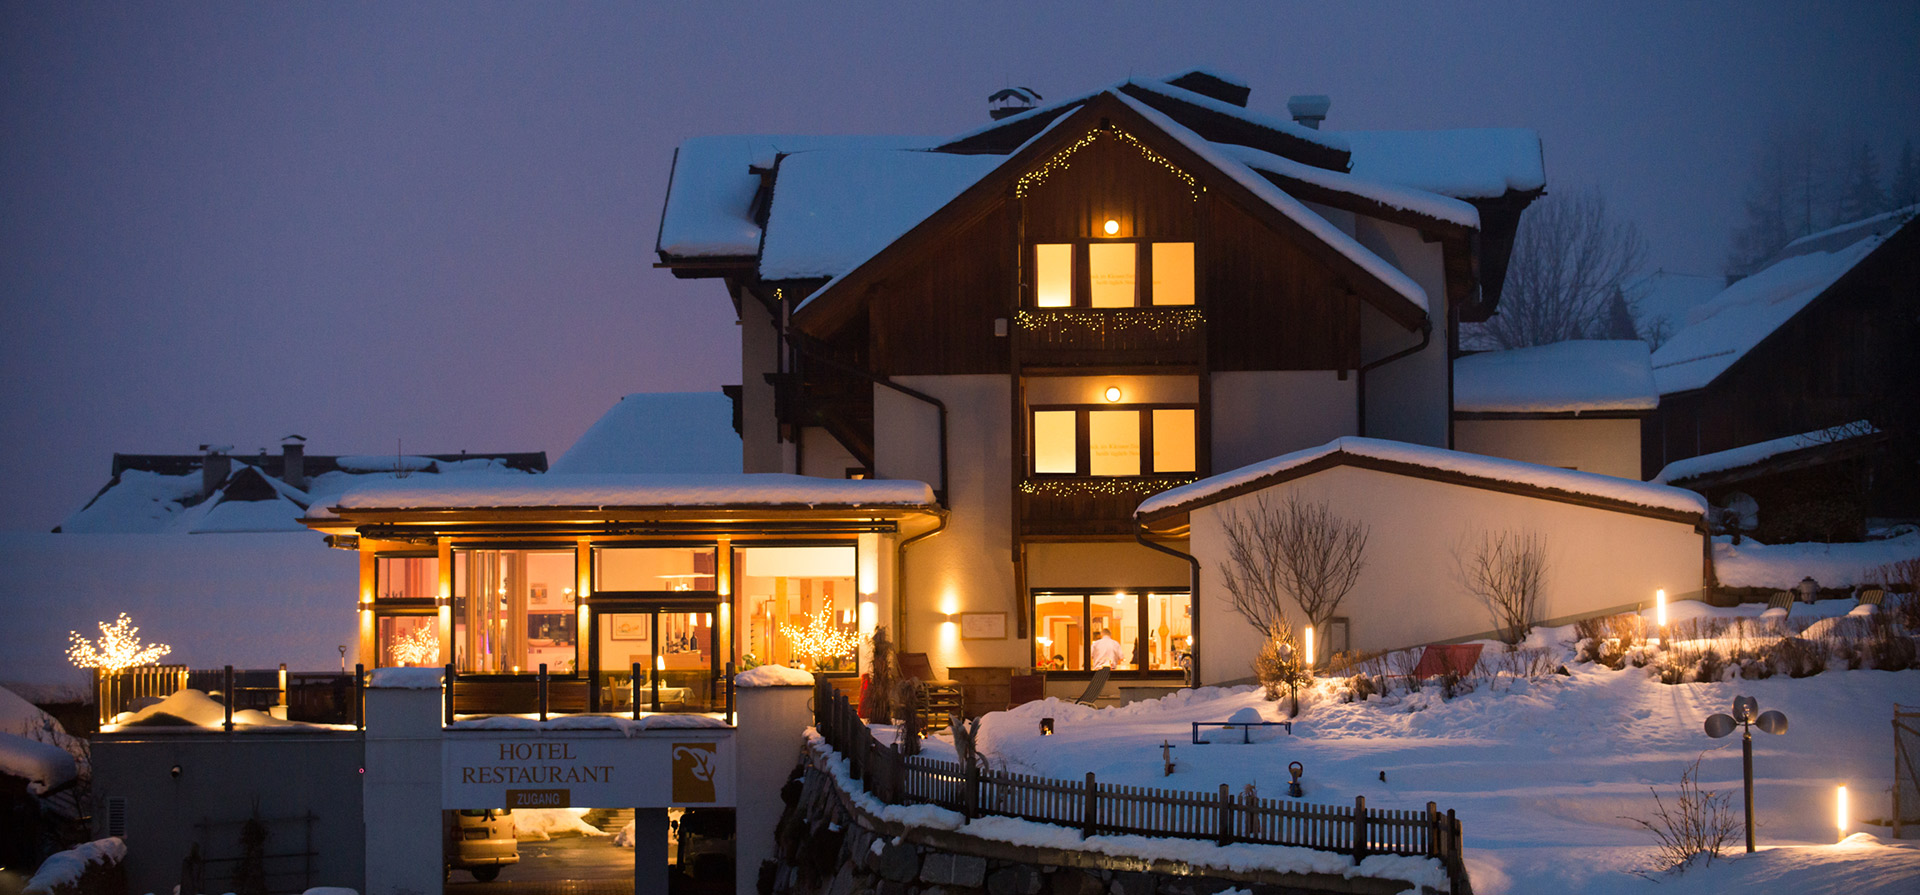 Hotel Regitnig Winterurlaub Seehotel Piste Weissensee Kärnten